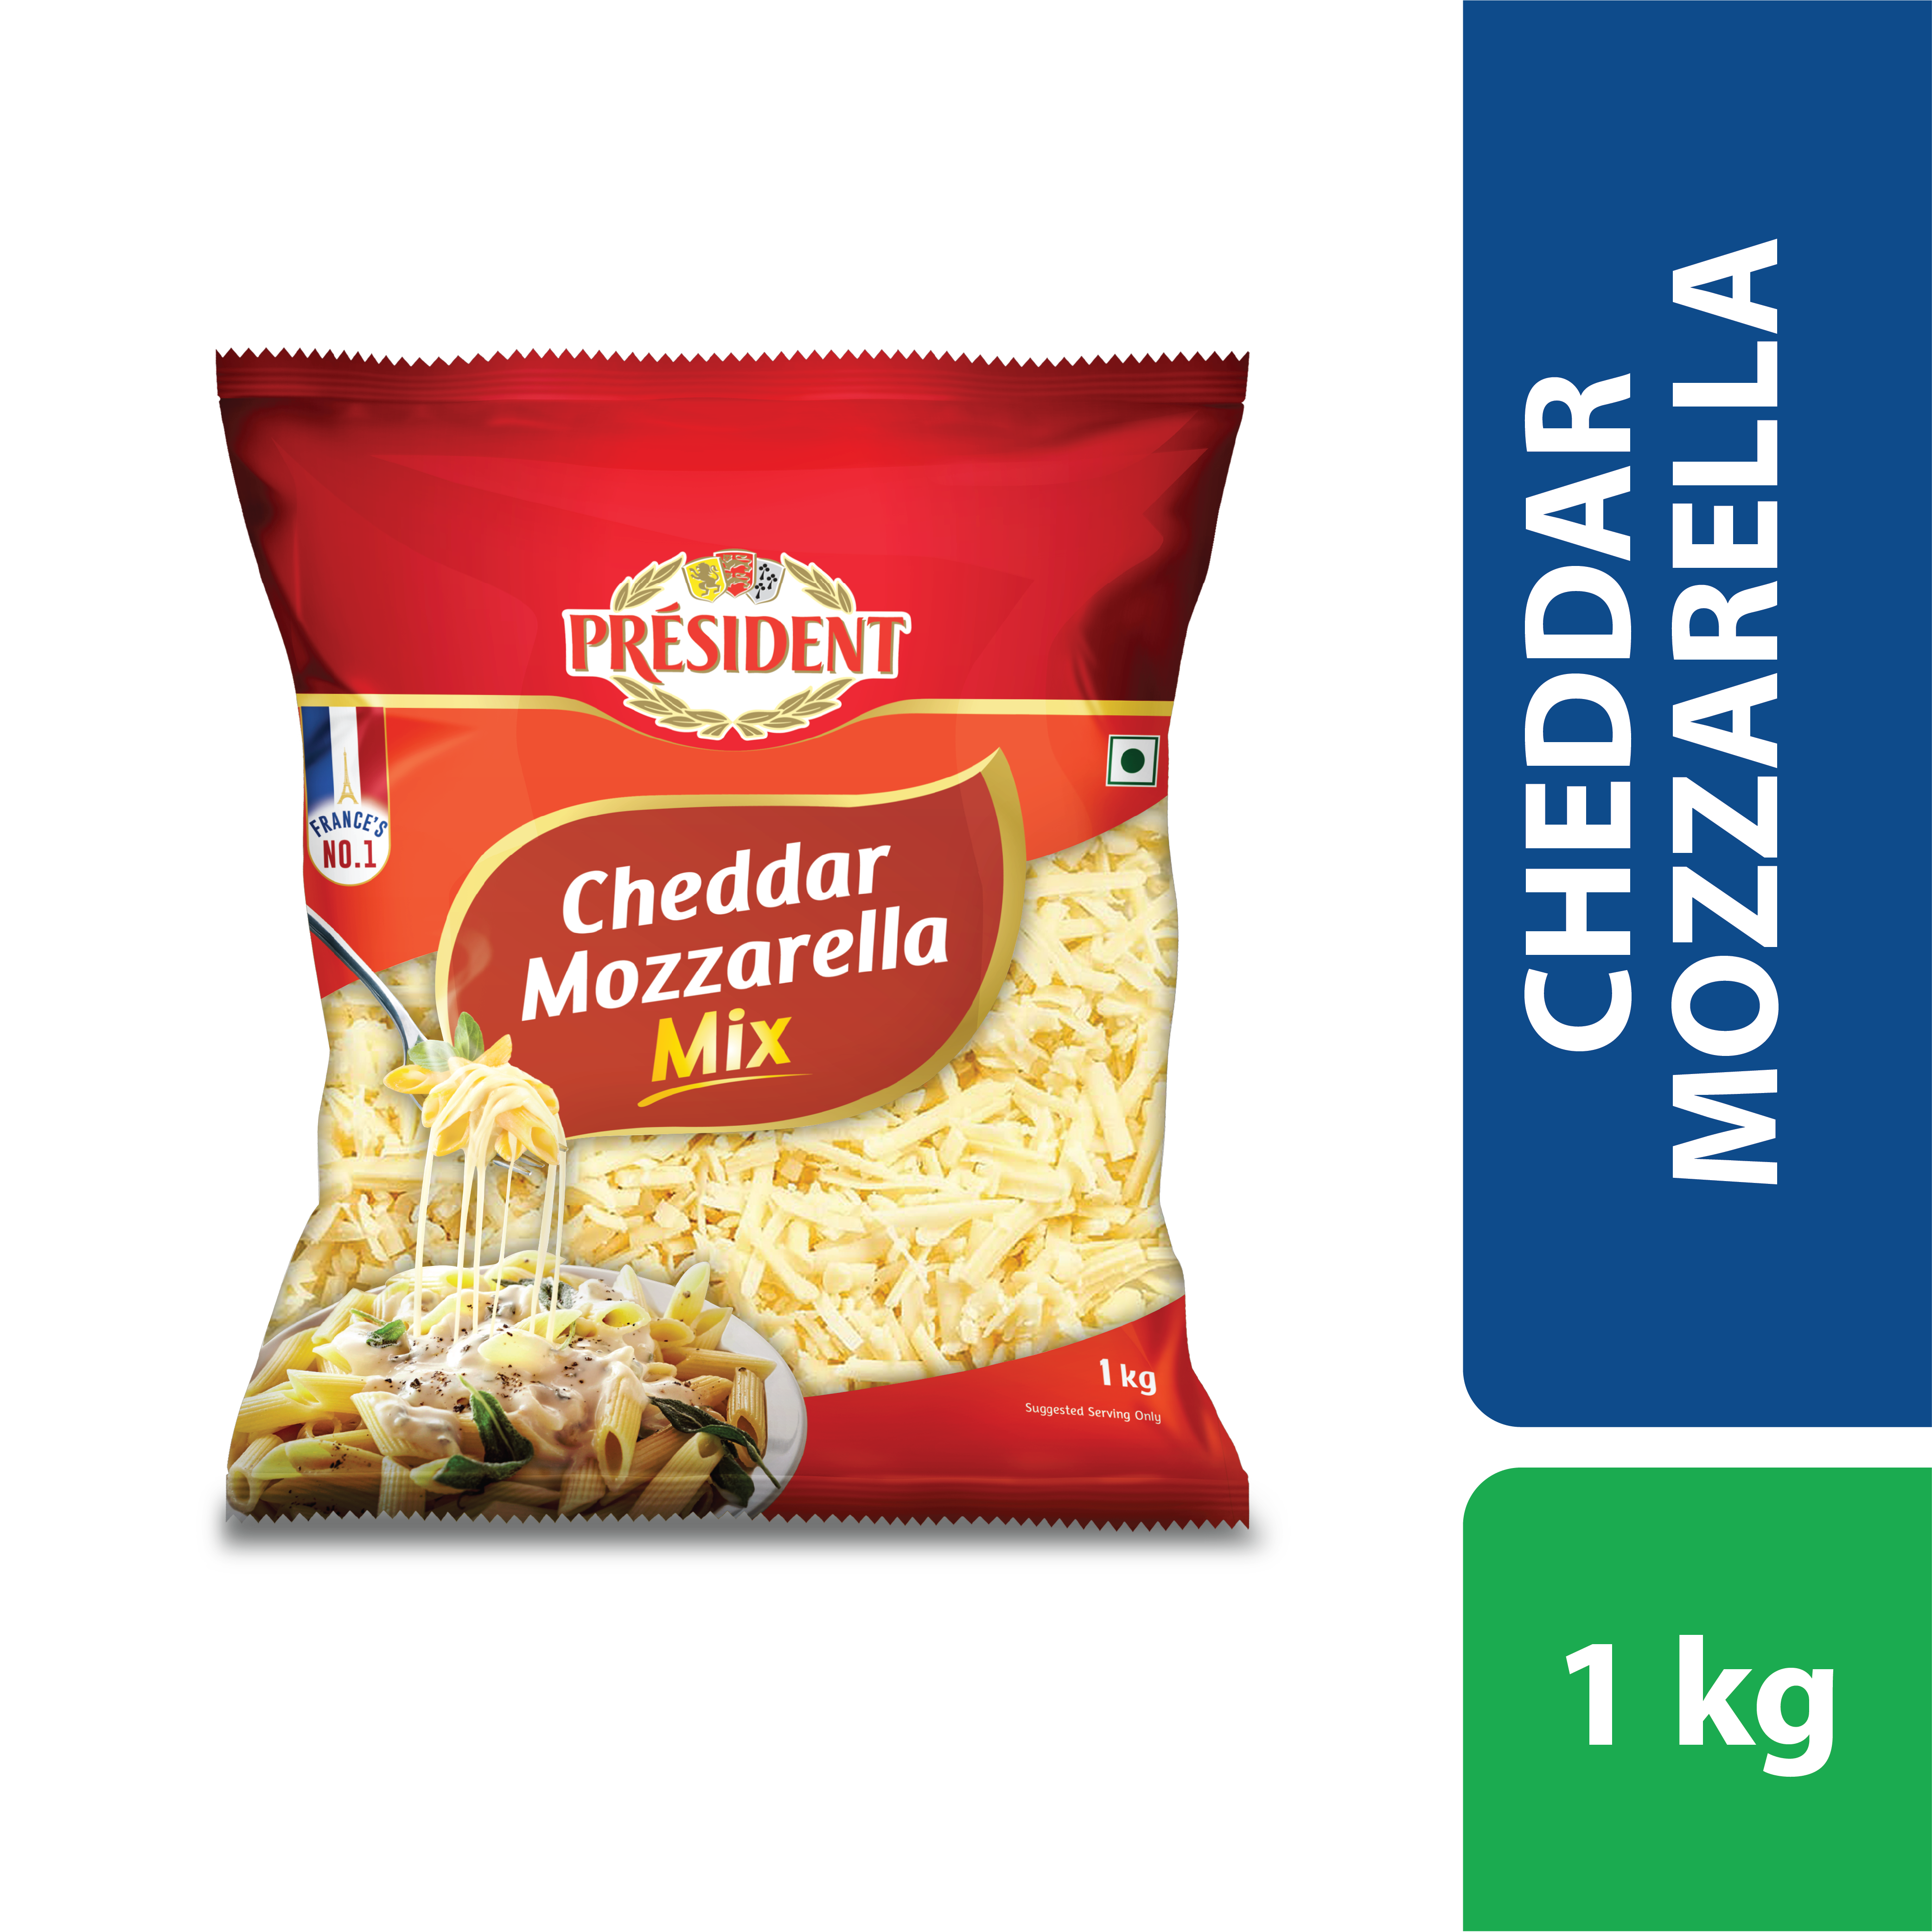 Cheddar Mozzarella MIx